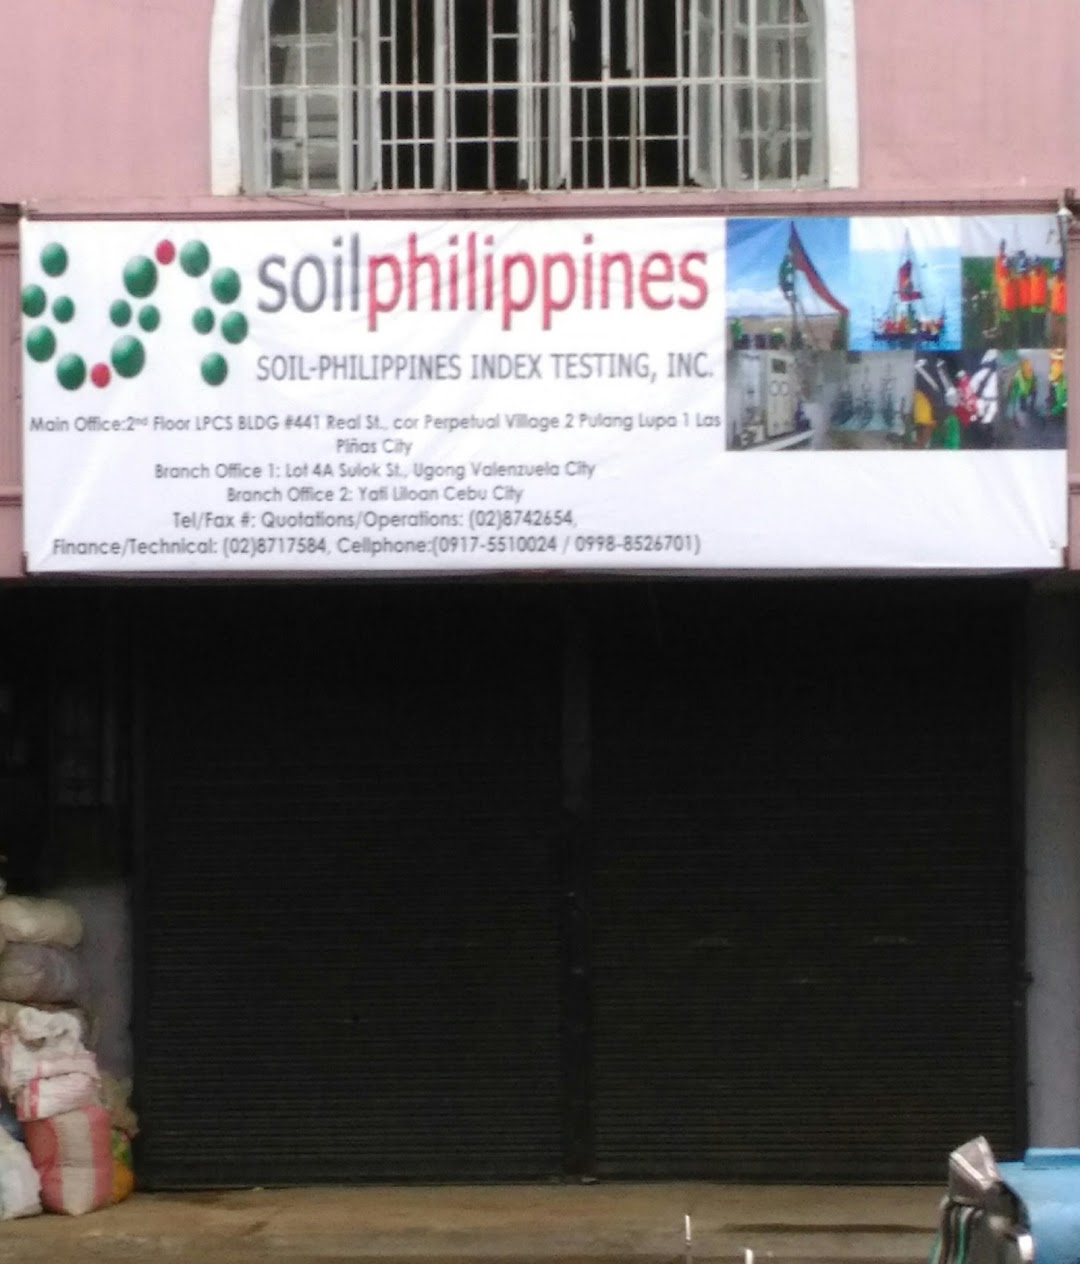 Soil - Philippines Index Testing, Inc.